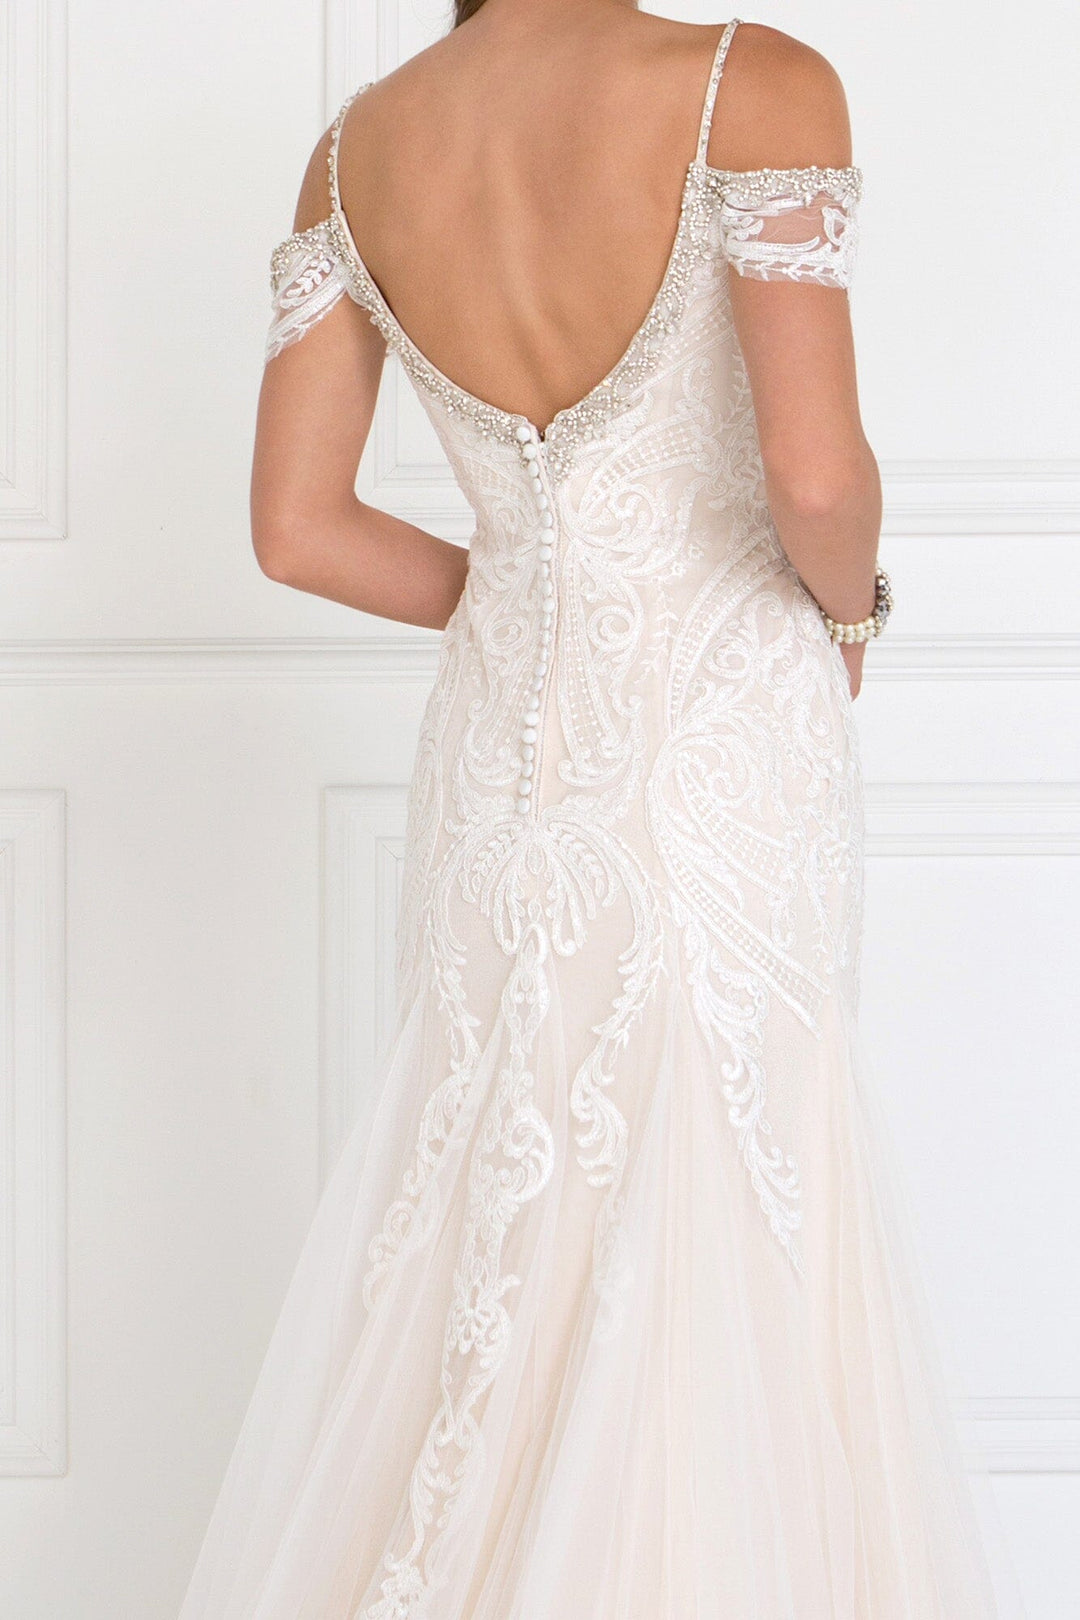 Long Cold Shoulder Ivory Wedding Dress by Elizabeth K GL1513